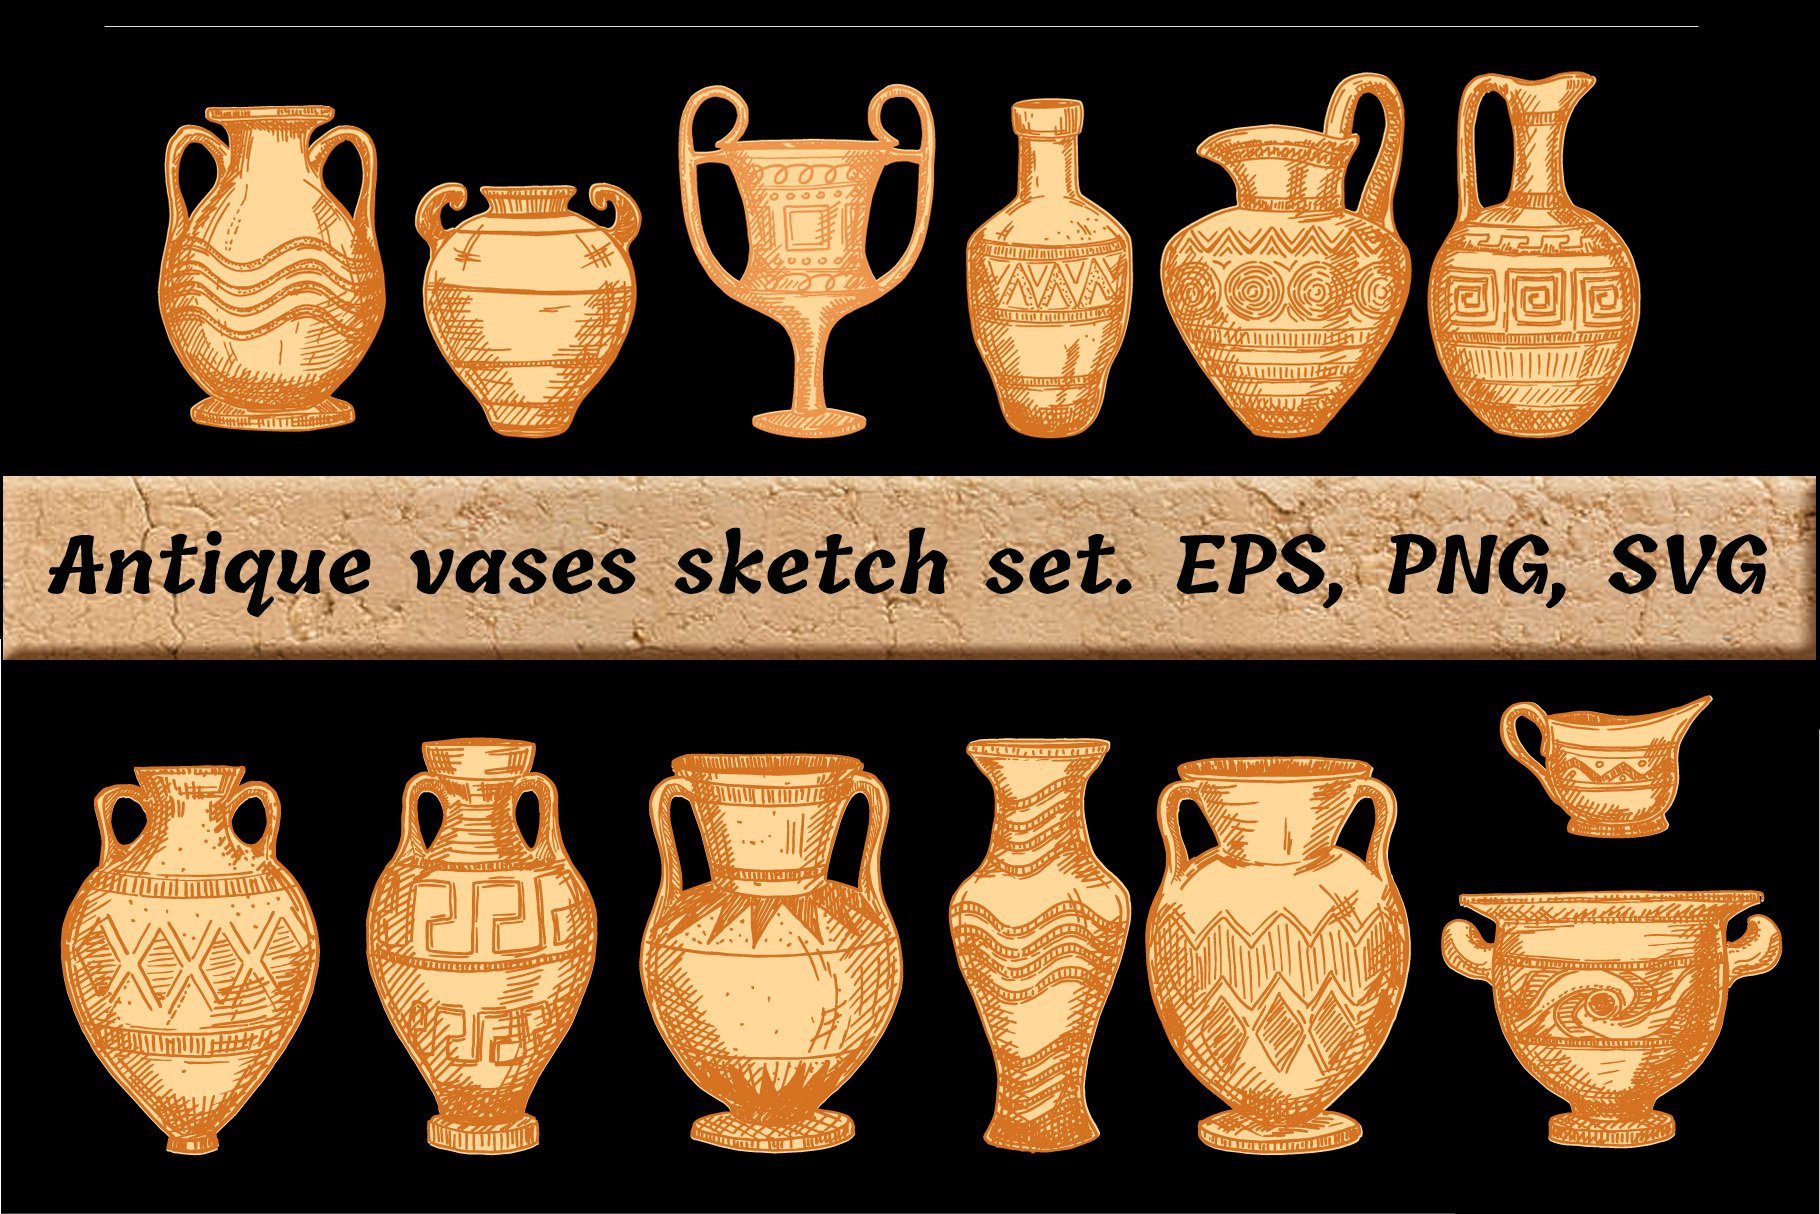 Antique Greek vases set. Sketch cover image.